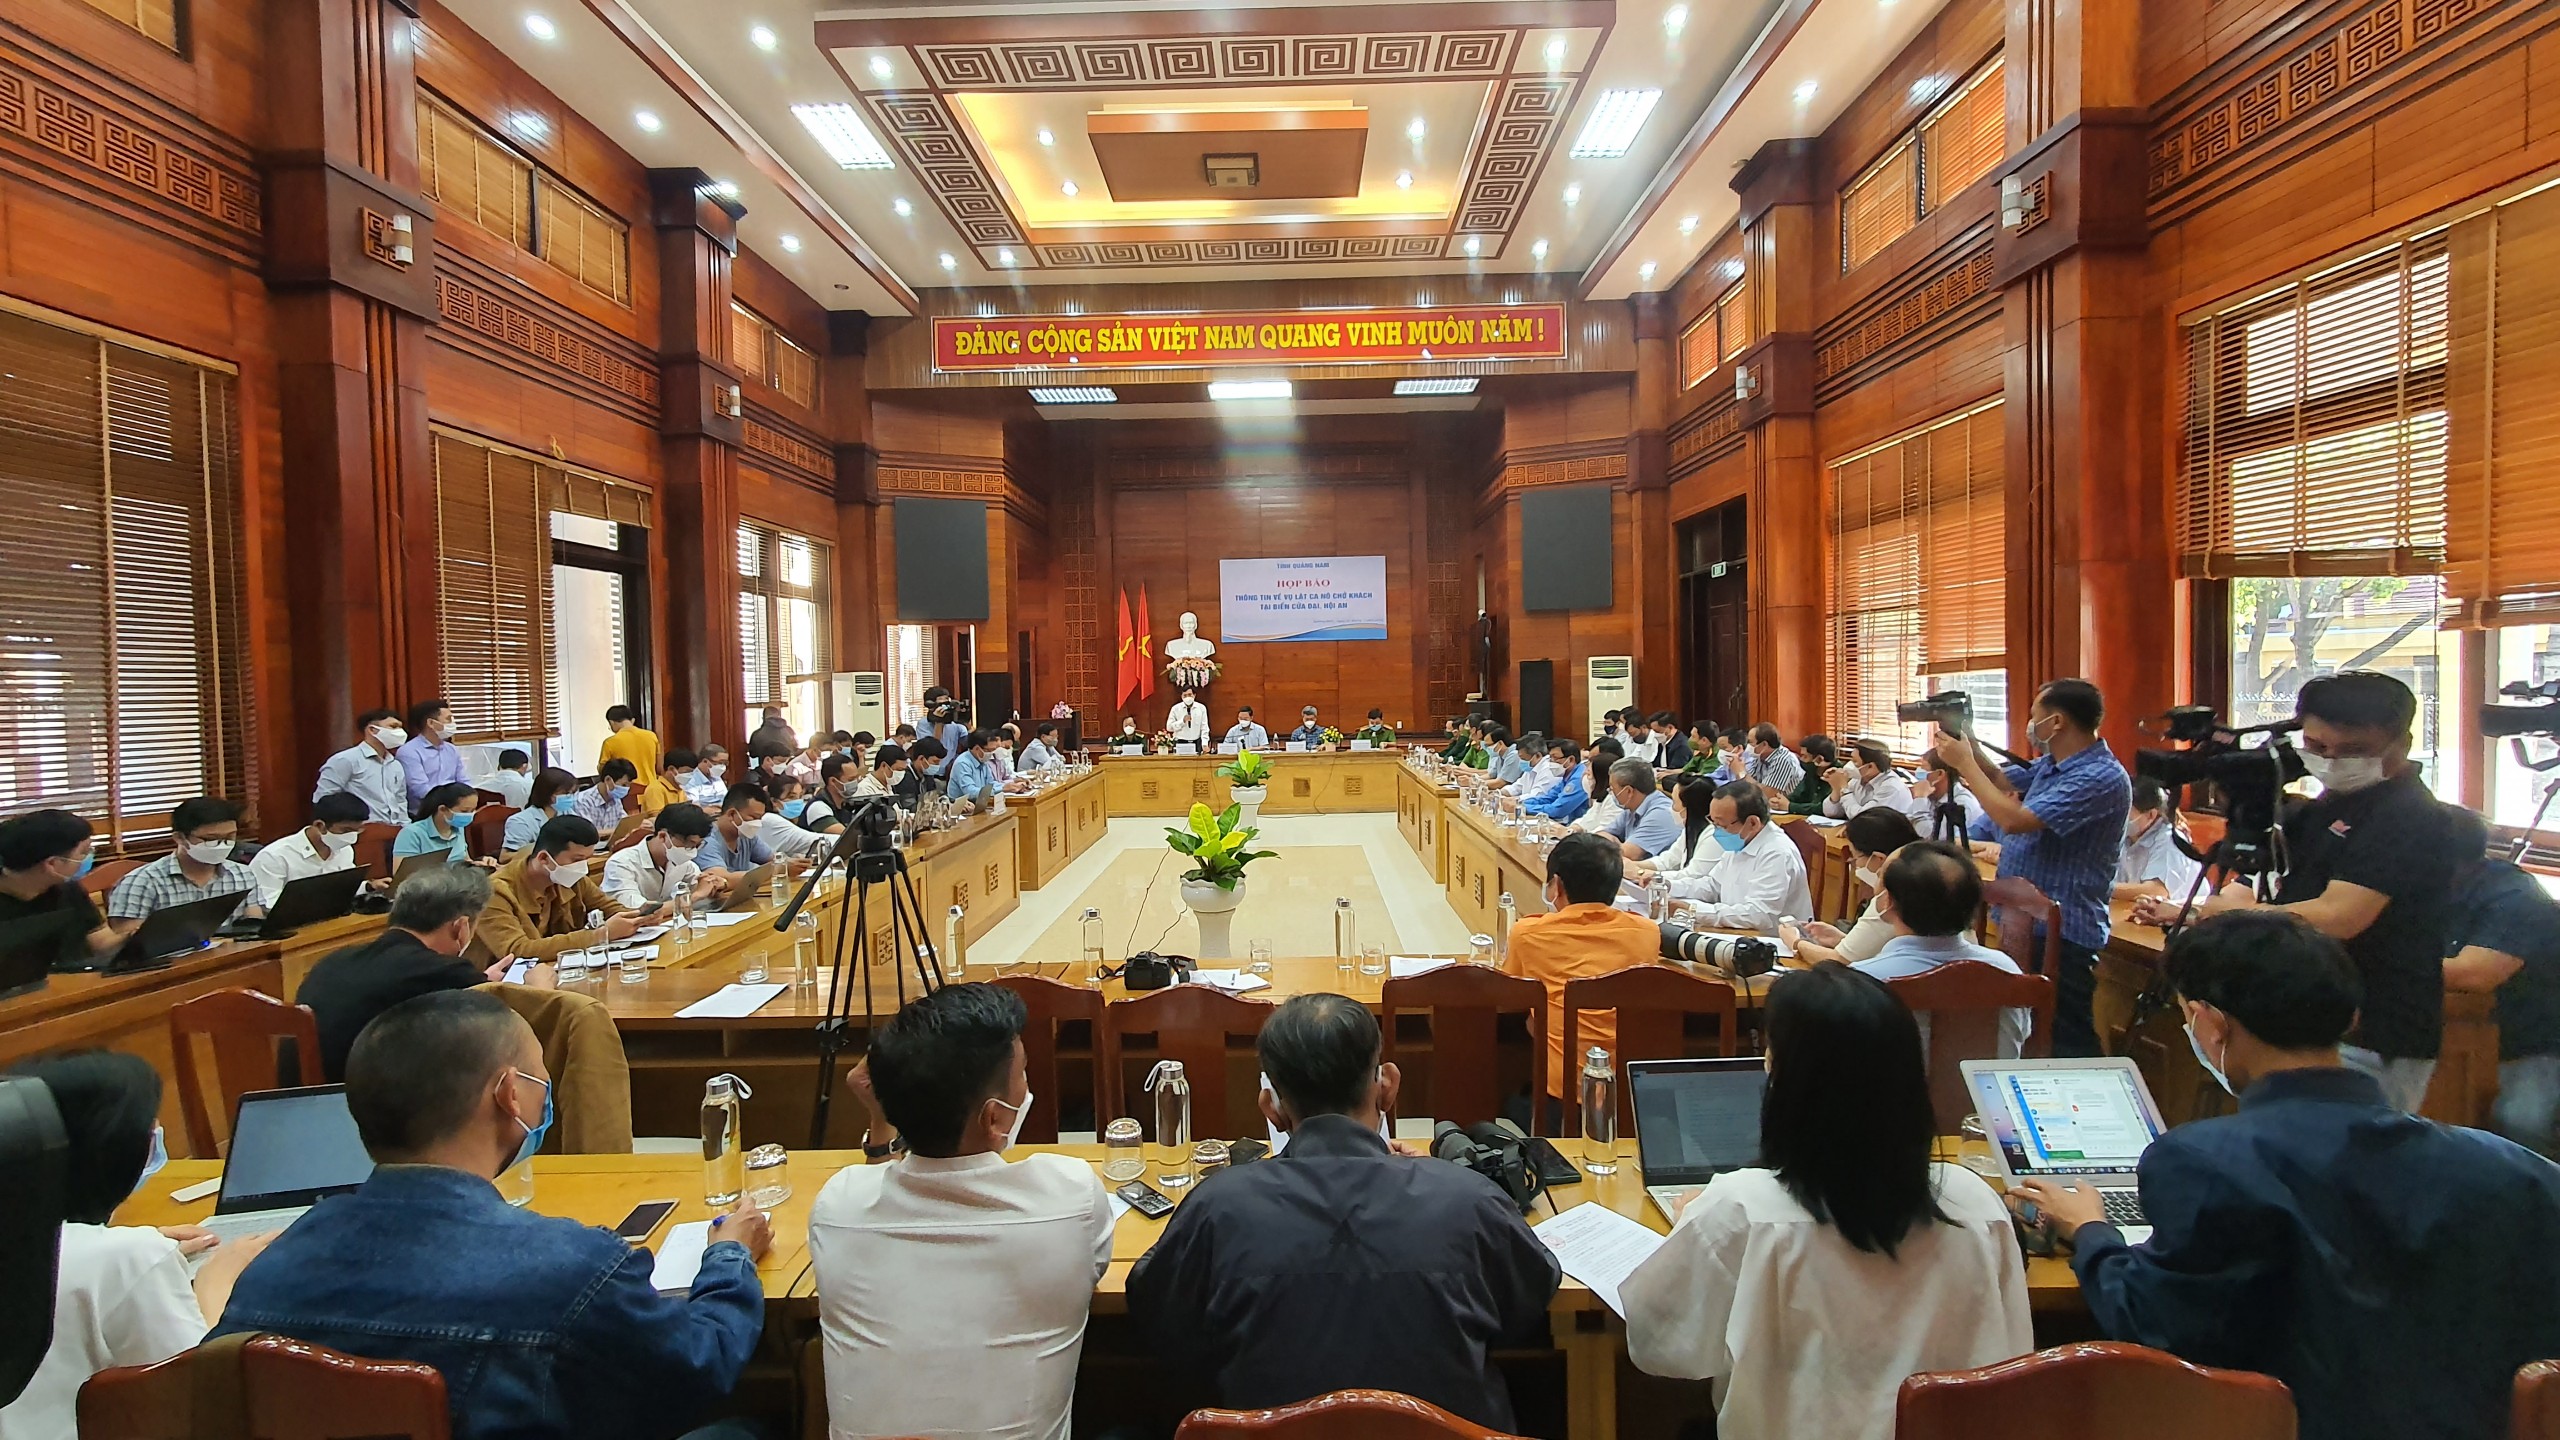 UBND tỉnh Quảng Nam vừa tổ chức buổi họp báo thông tin về vụ lật ca nô chở khách du lịch ở biển Cửa Đại, thành phố Hội An